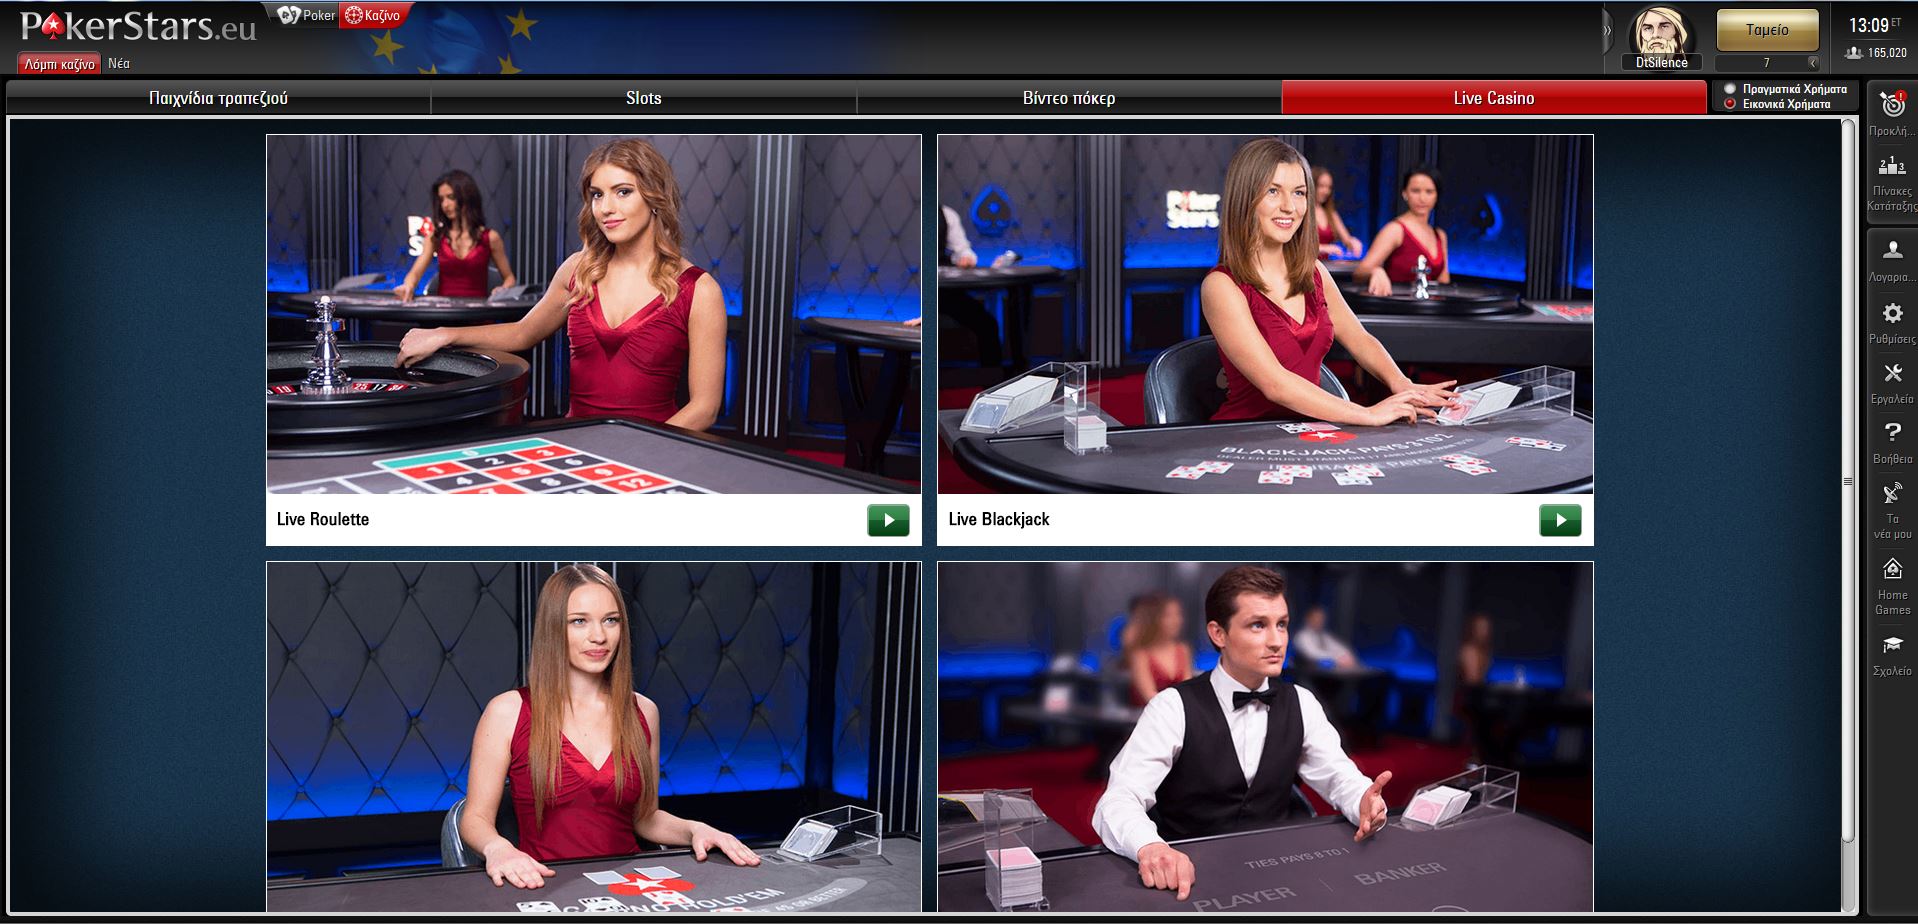 pokerstars live casino live dealer lobby